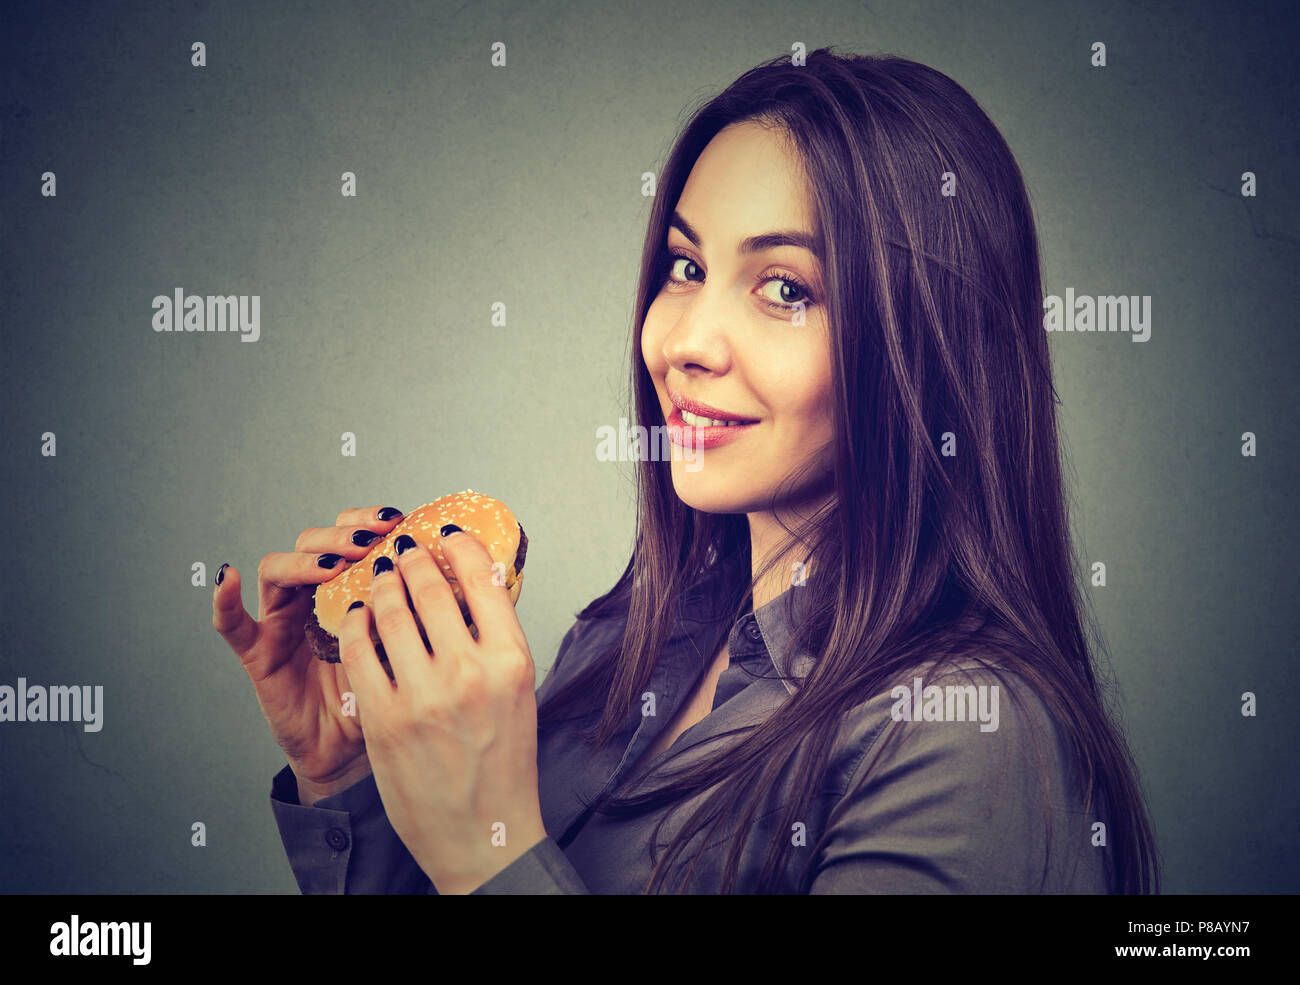 Cute beautiful woman with a cheeseburger looking at camera Stock Photo